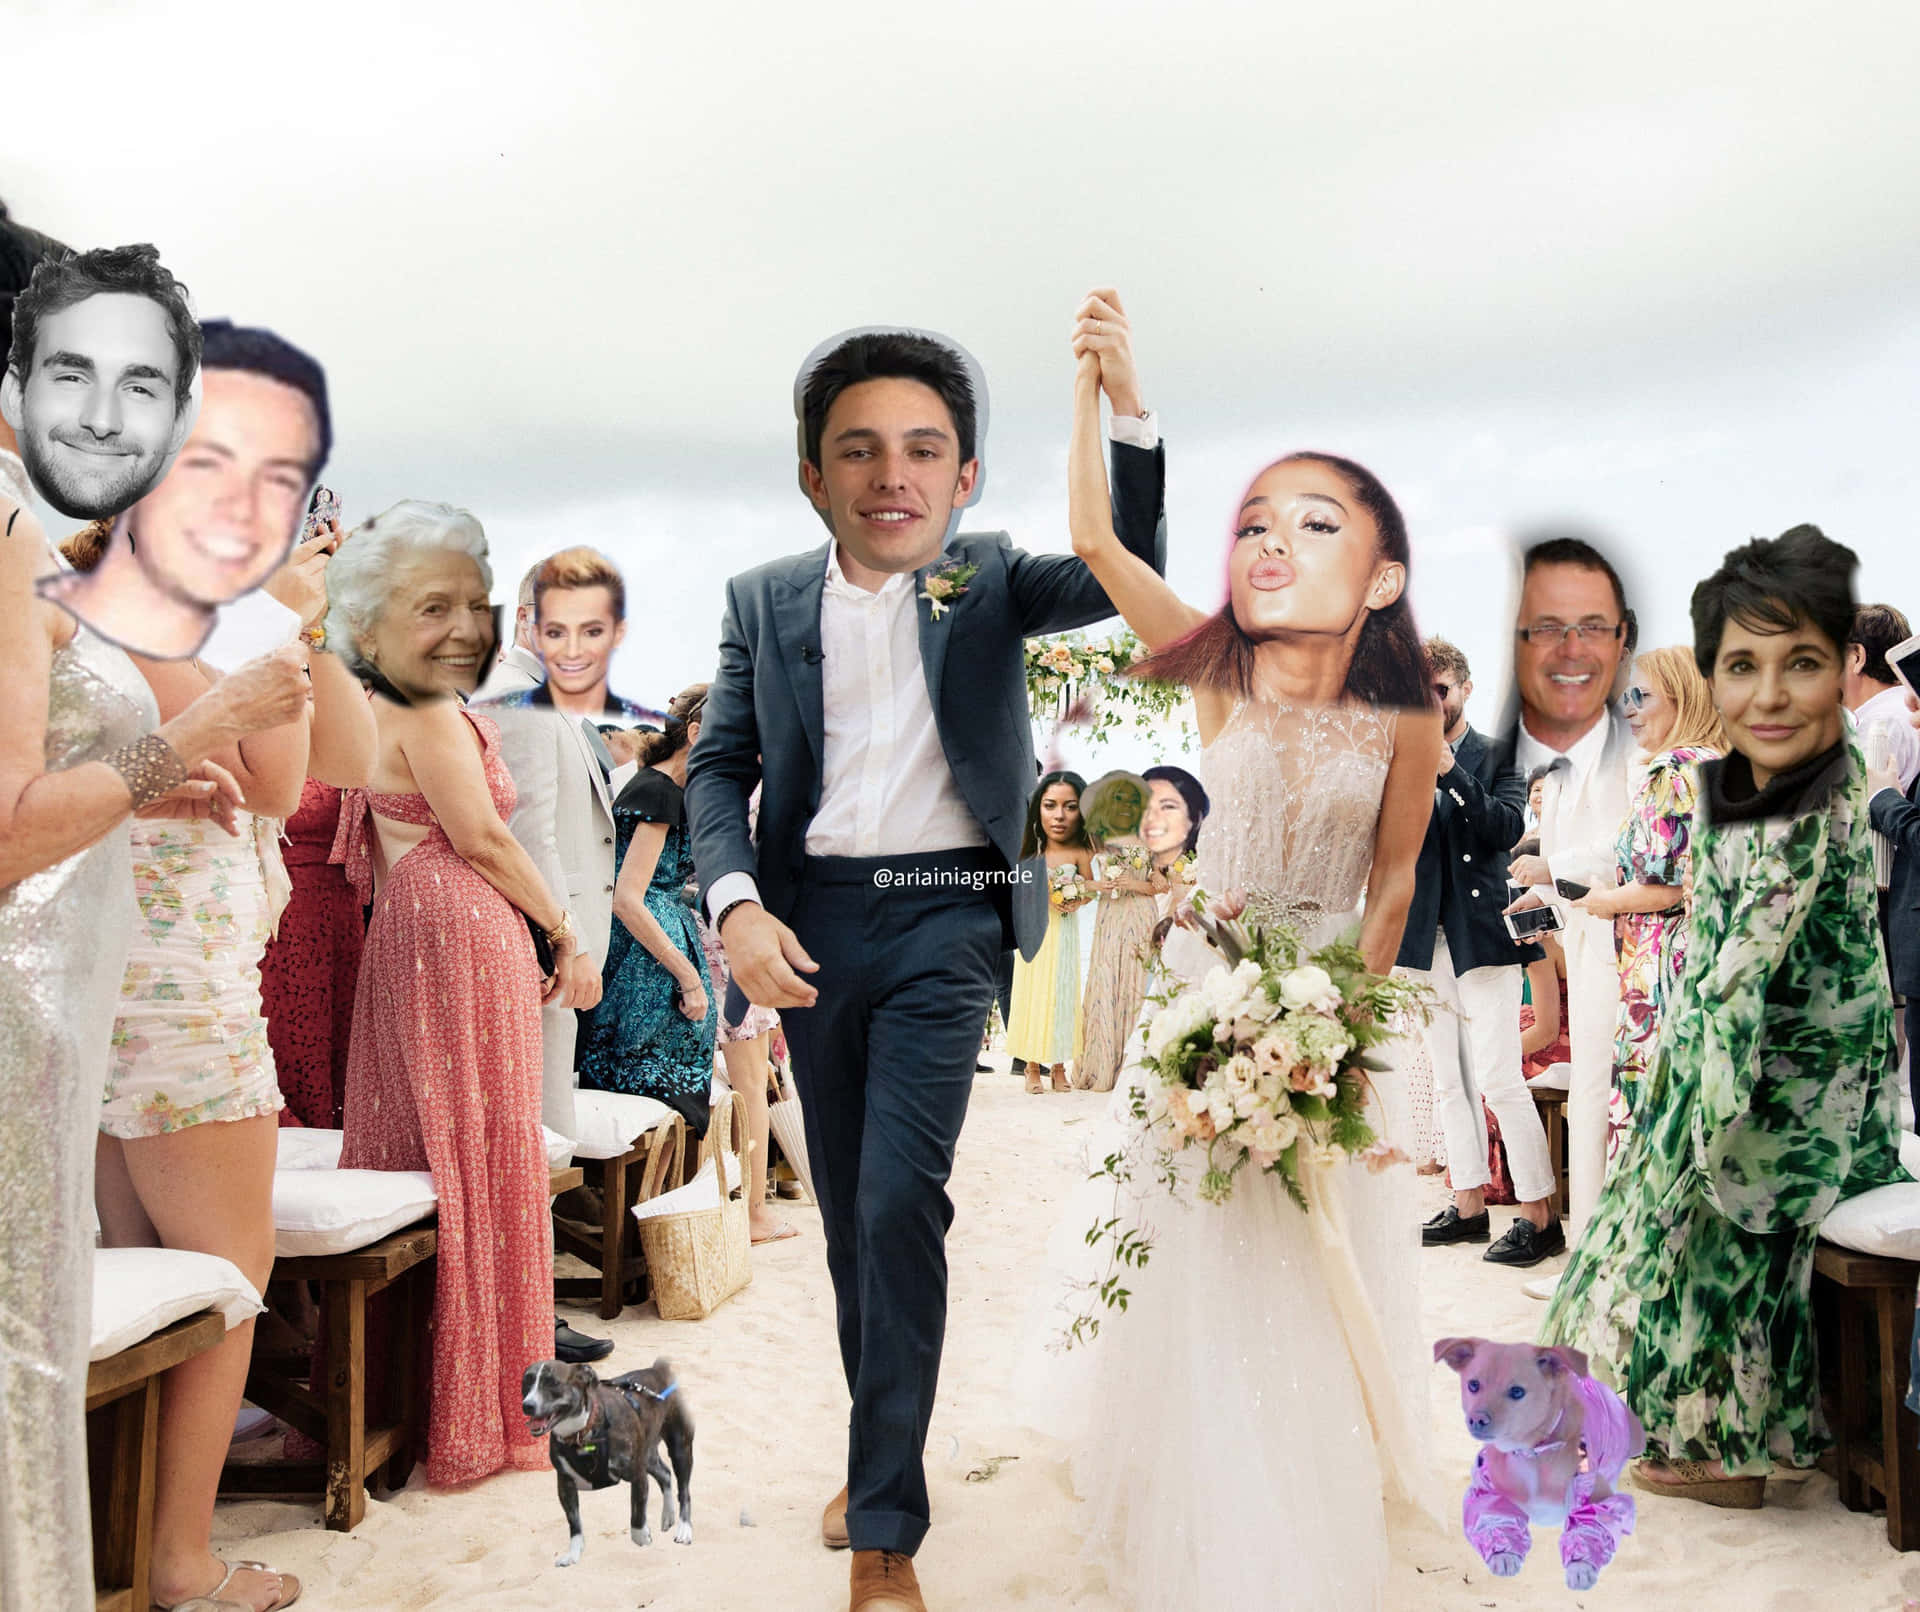 Engraçadafoto De Casamento Da Ariana Grande.